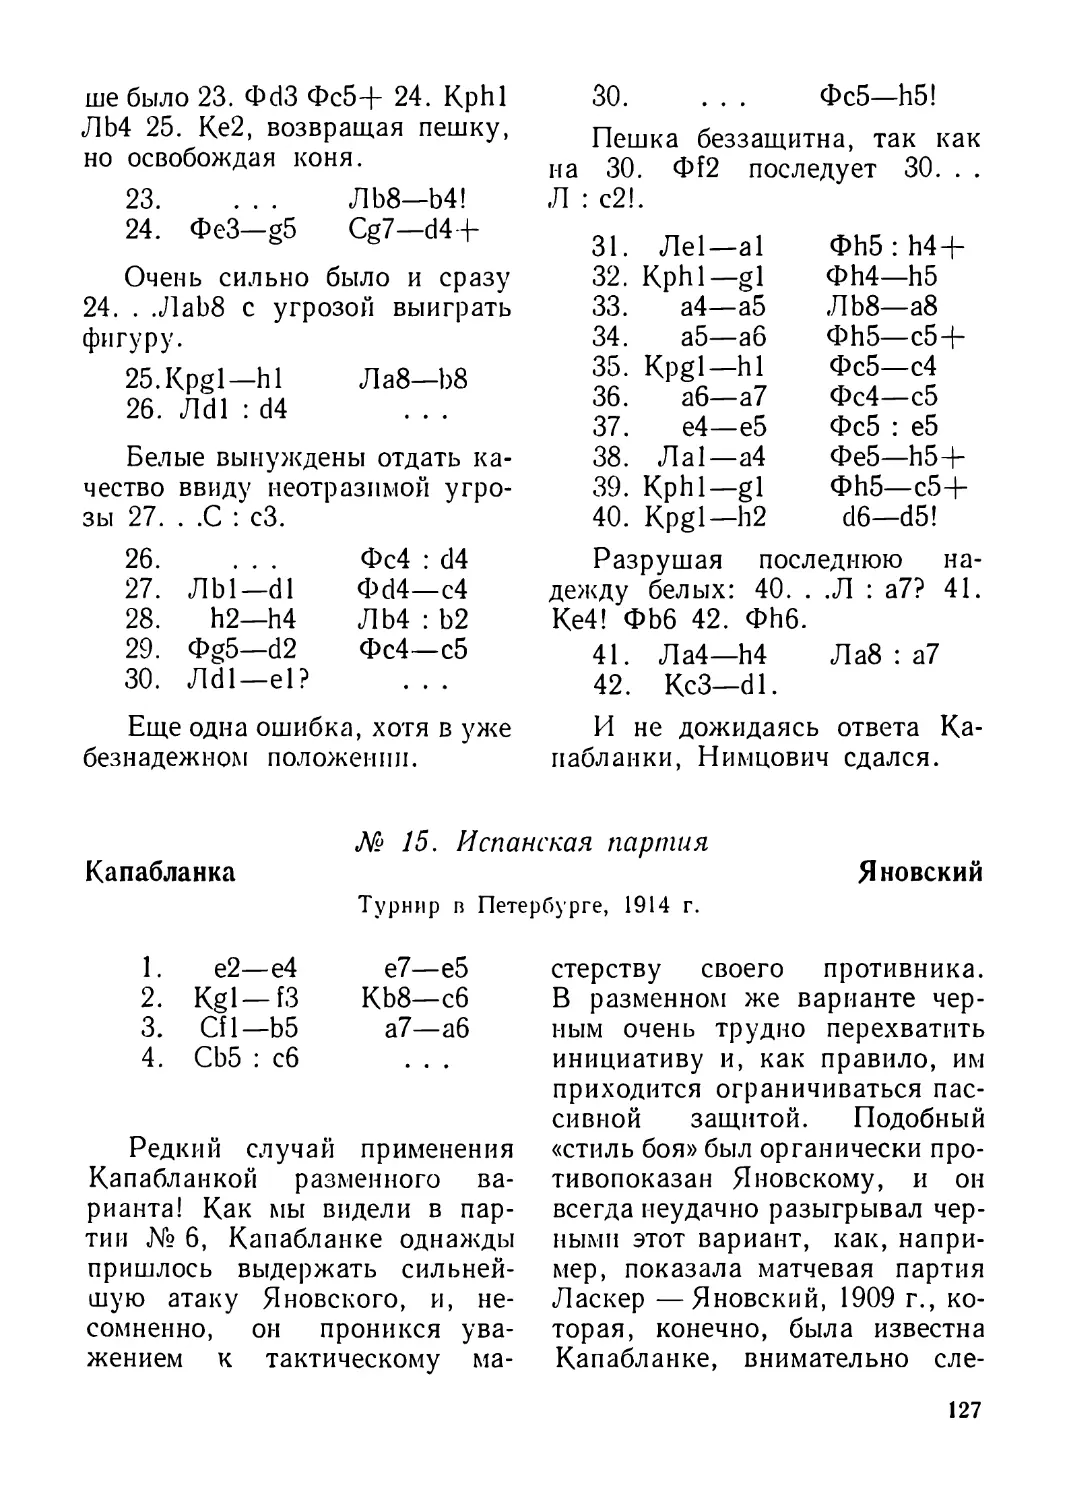 15.Капабланка — Яновский, турнир в Петербурге 1914 г.